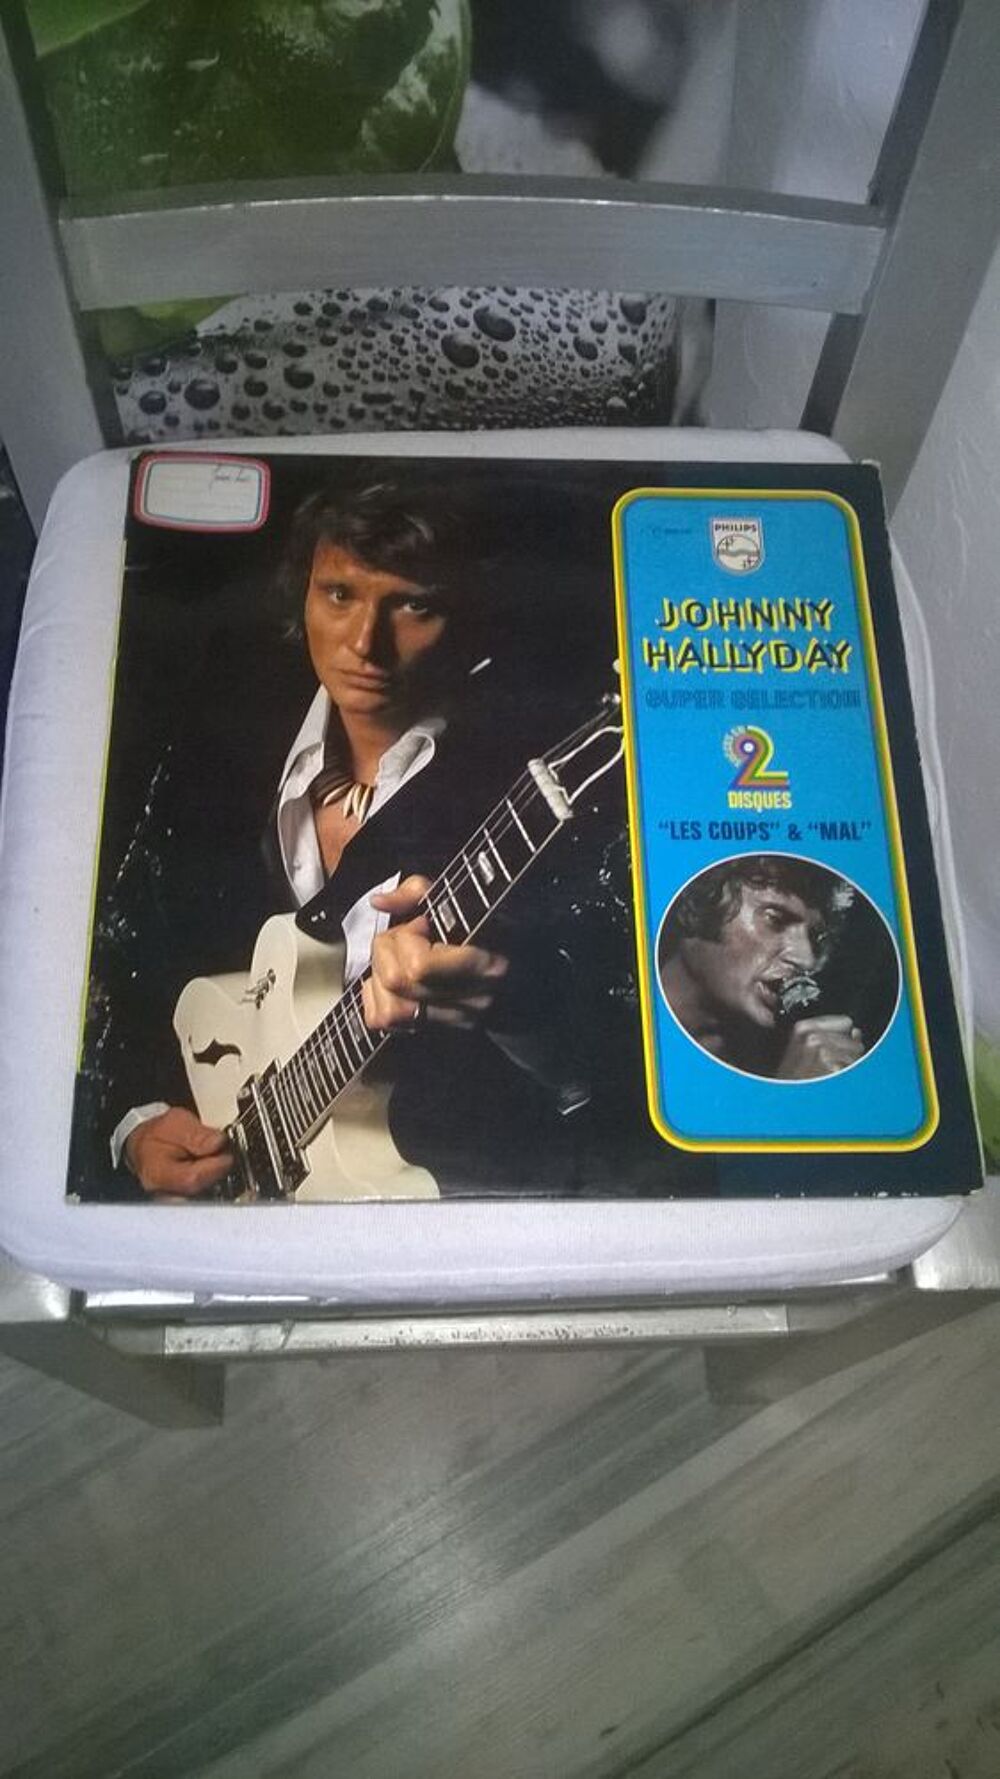 Vinyle Johnny Hallyday
Les Coups &amp; Mal
1966
Bon etat
Dou CD et vinyles